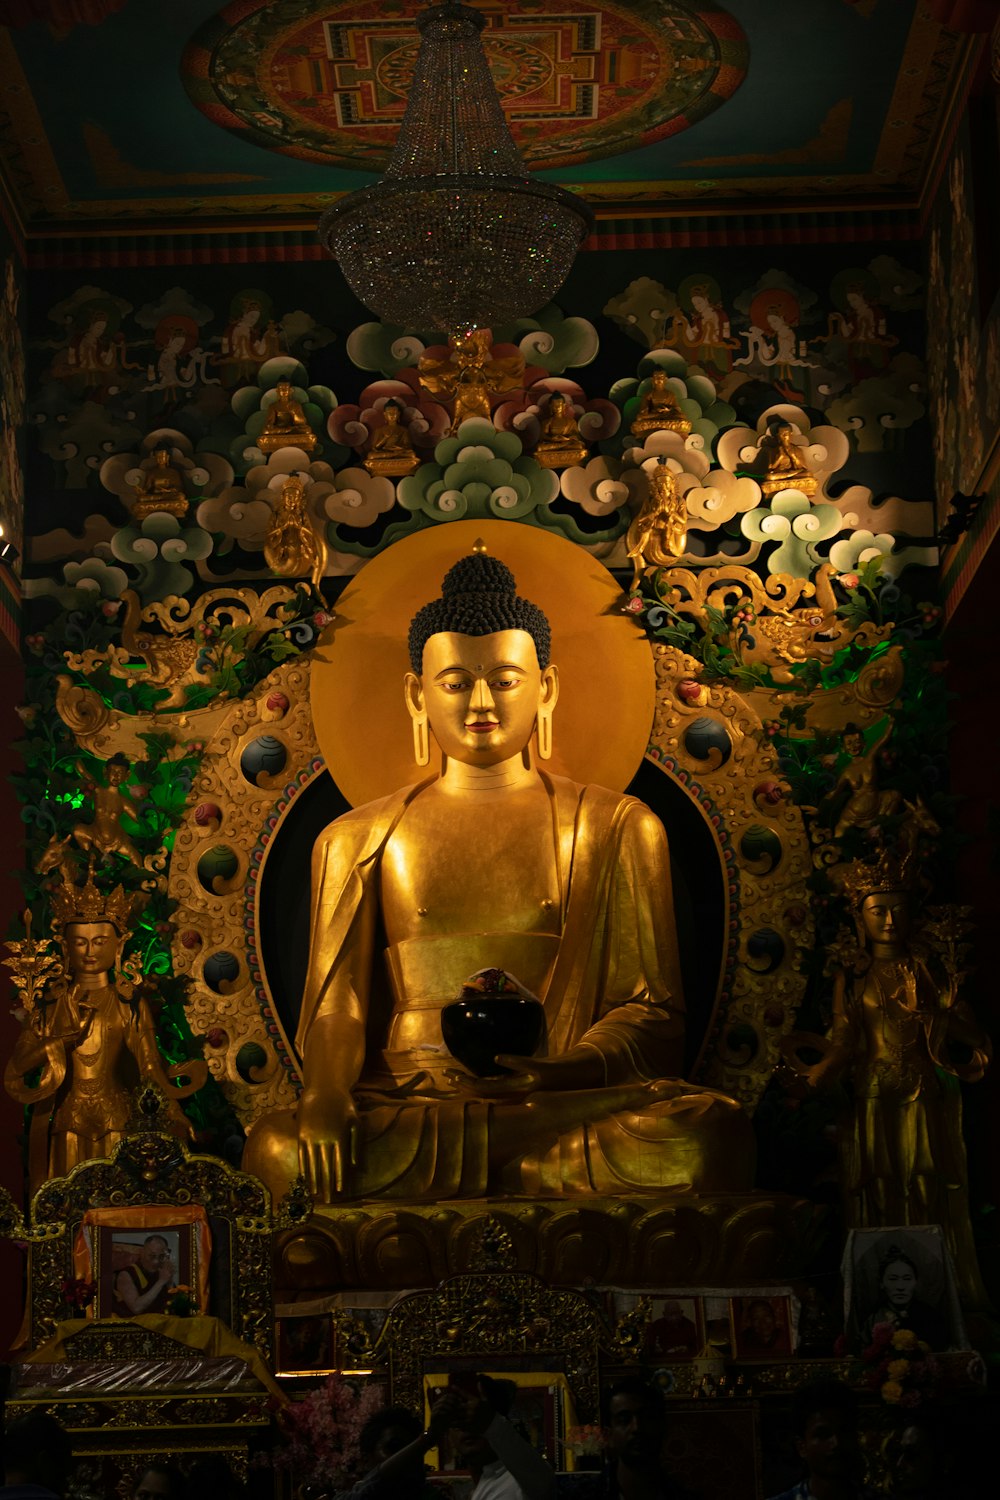 Un Buda Coronado Decorativo único Imagen de archivo - Imagen de sacudir,  hermoso: 114422895